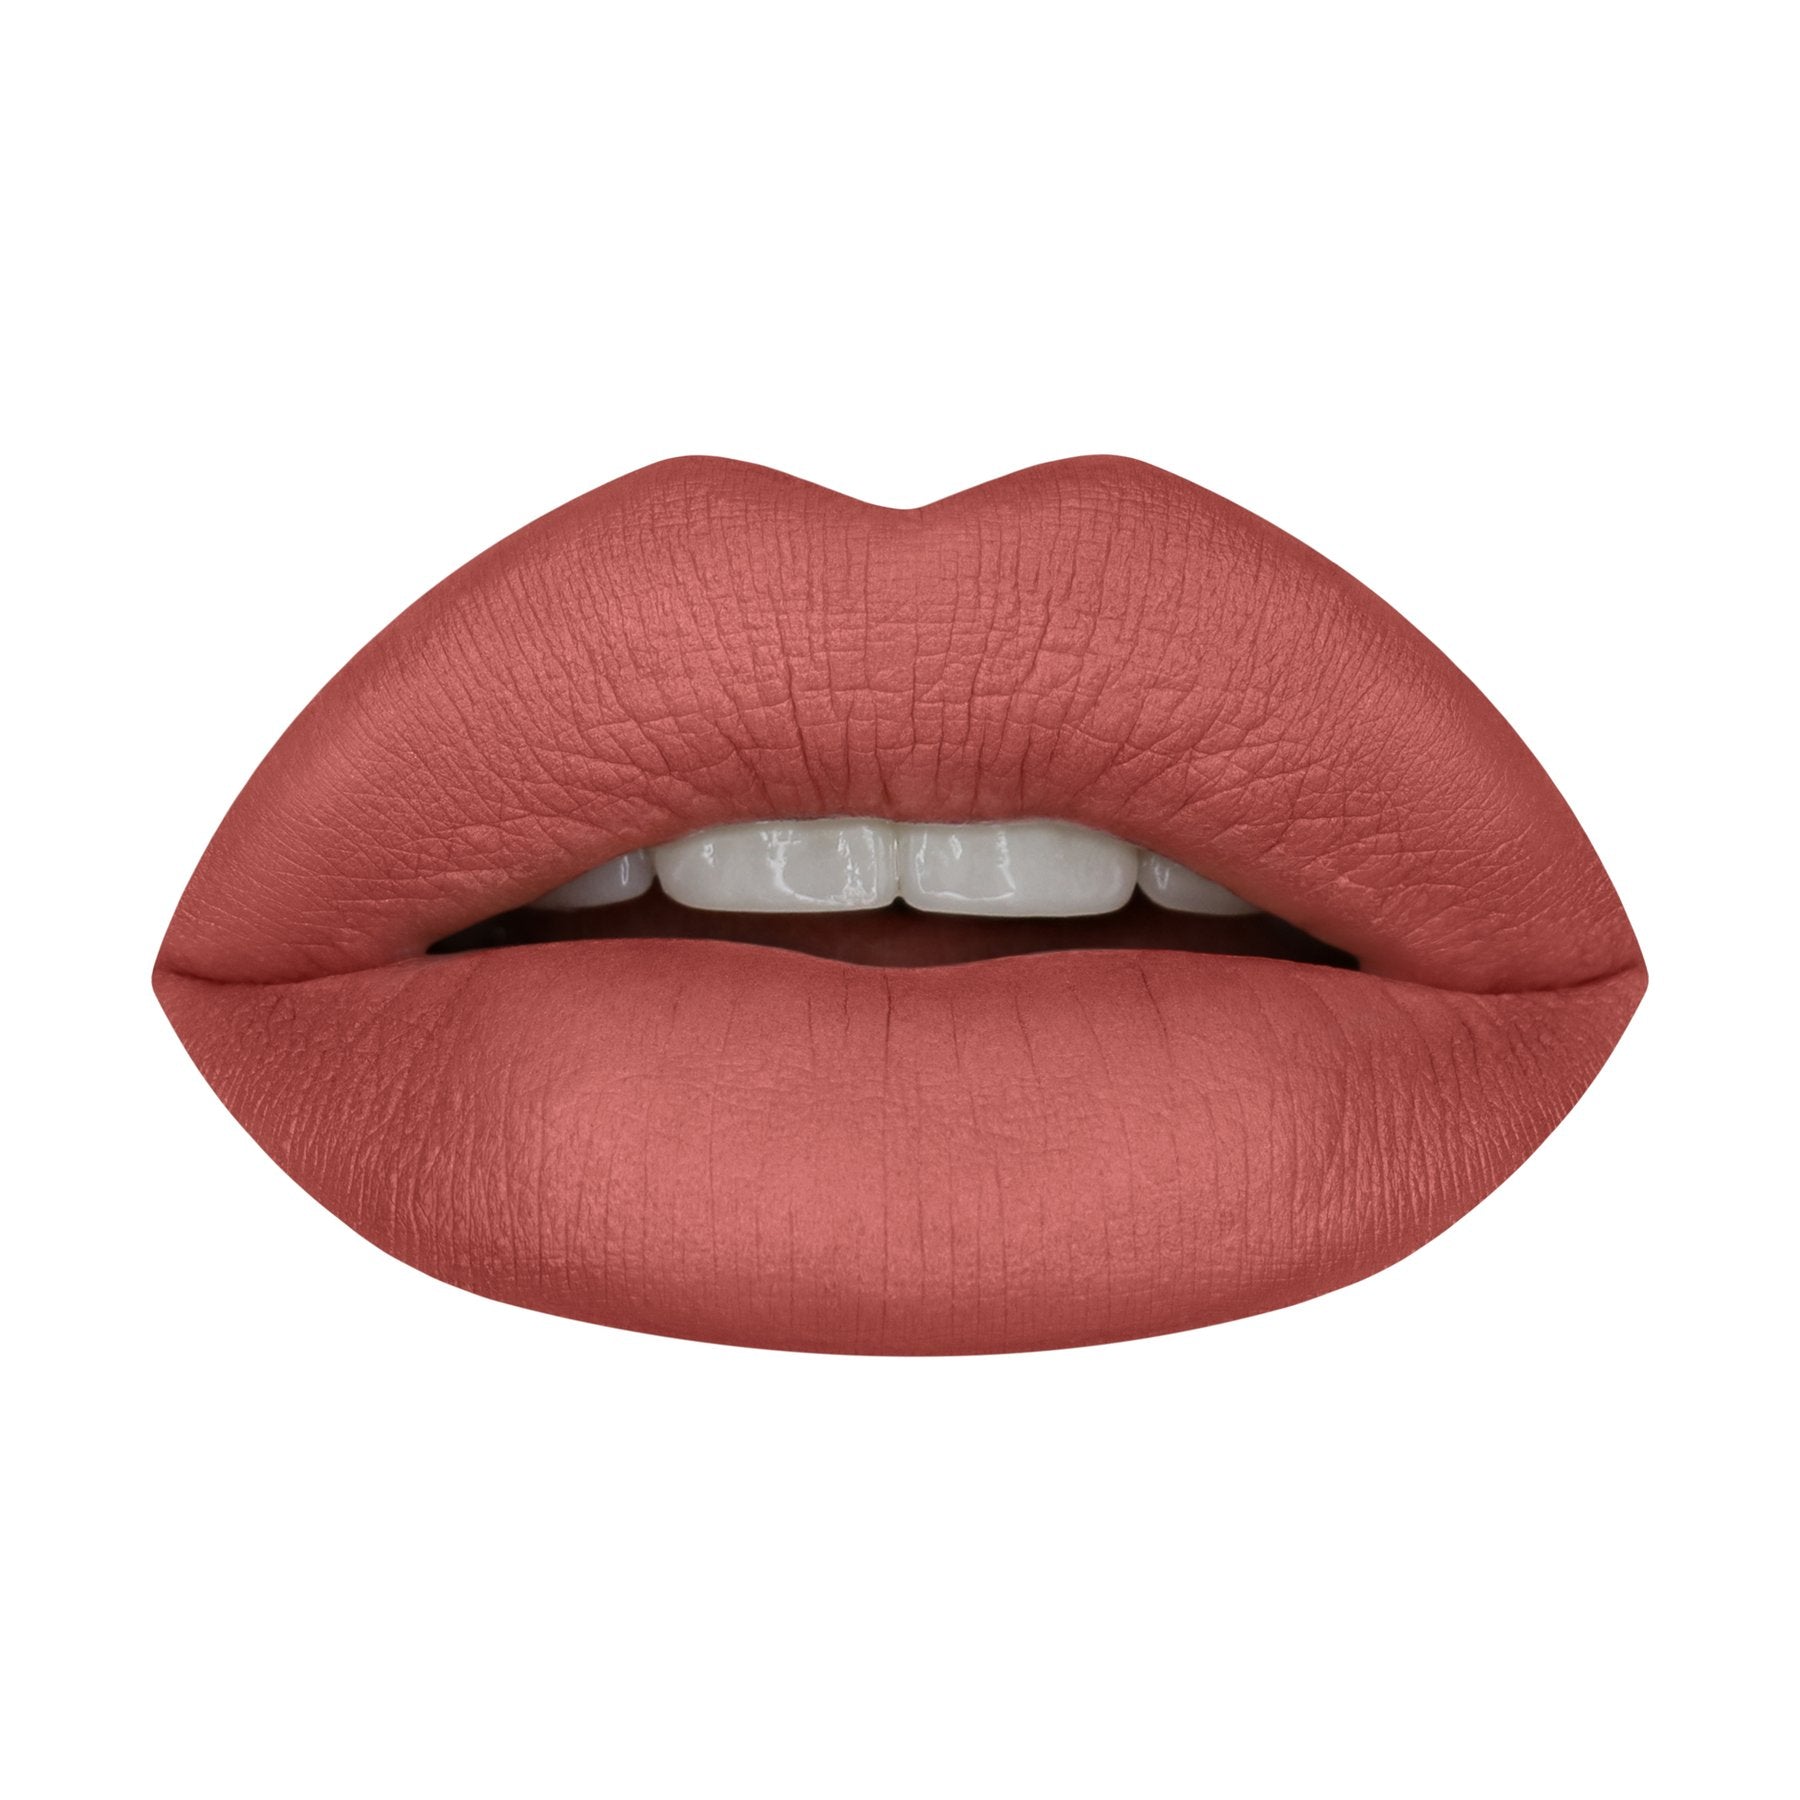 Huda Beauty Power Bullet Matte Lipstick,First Kiss, 3g